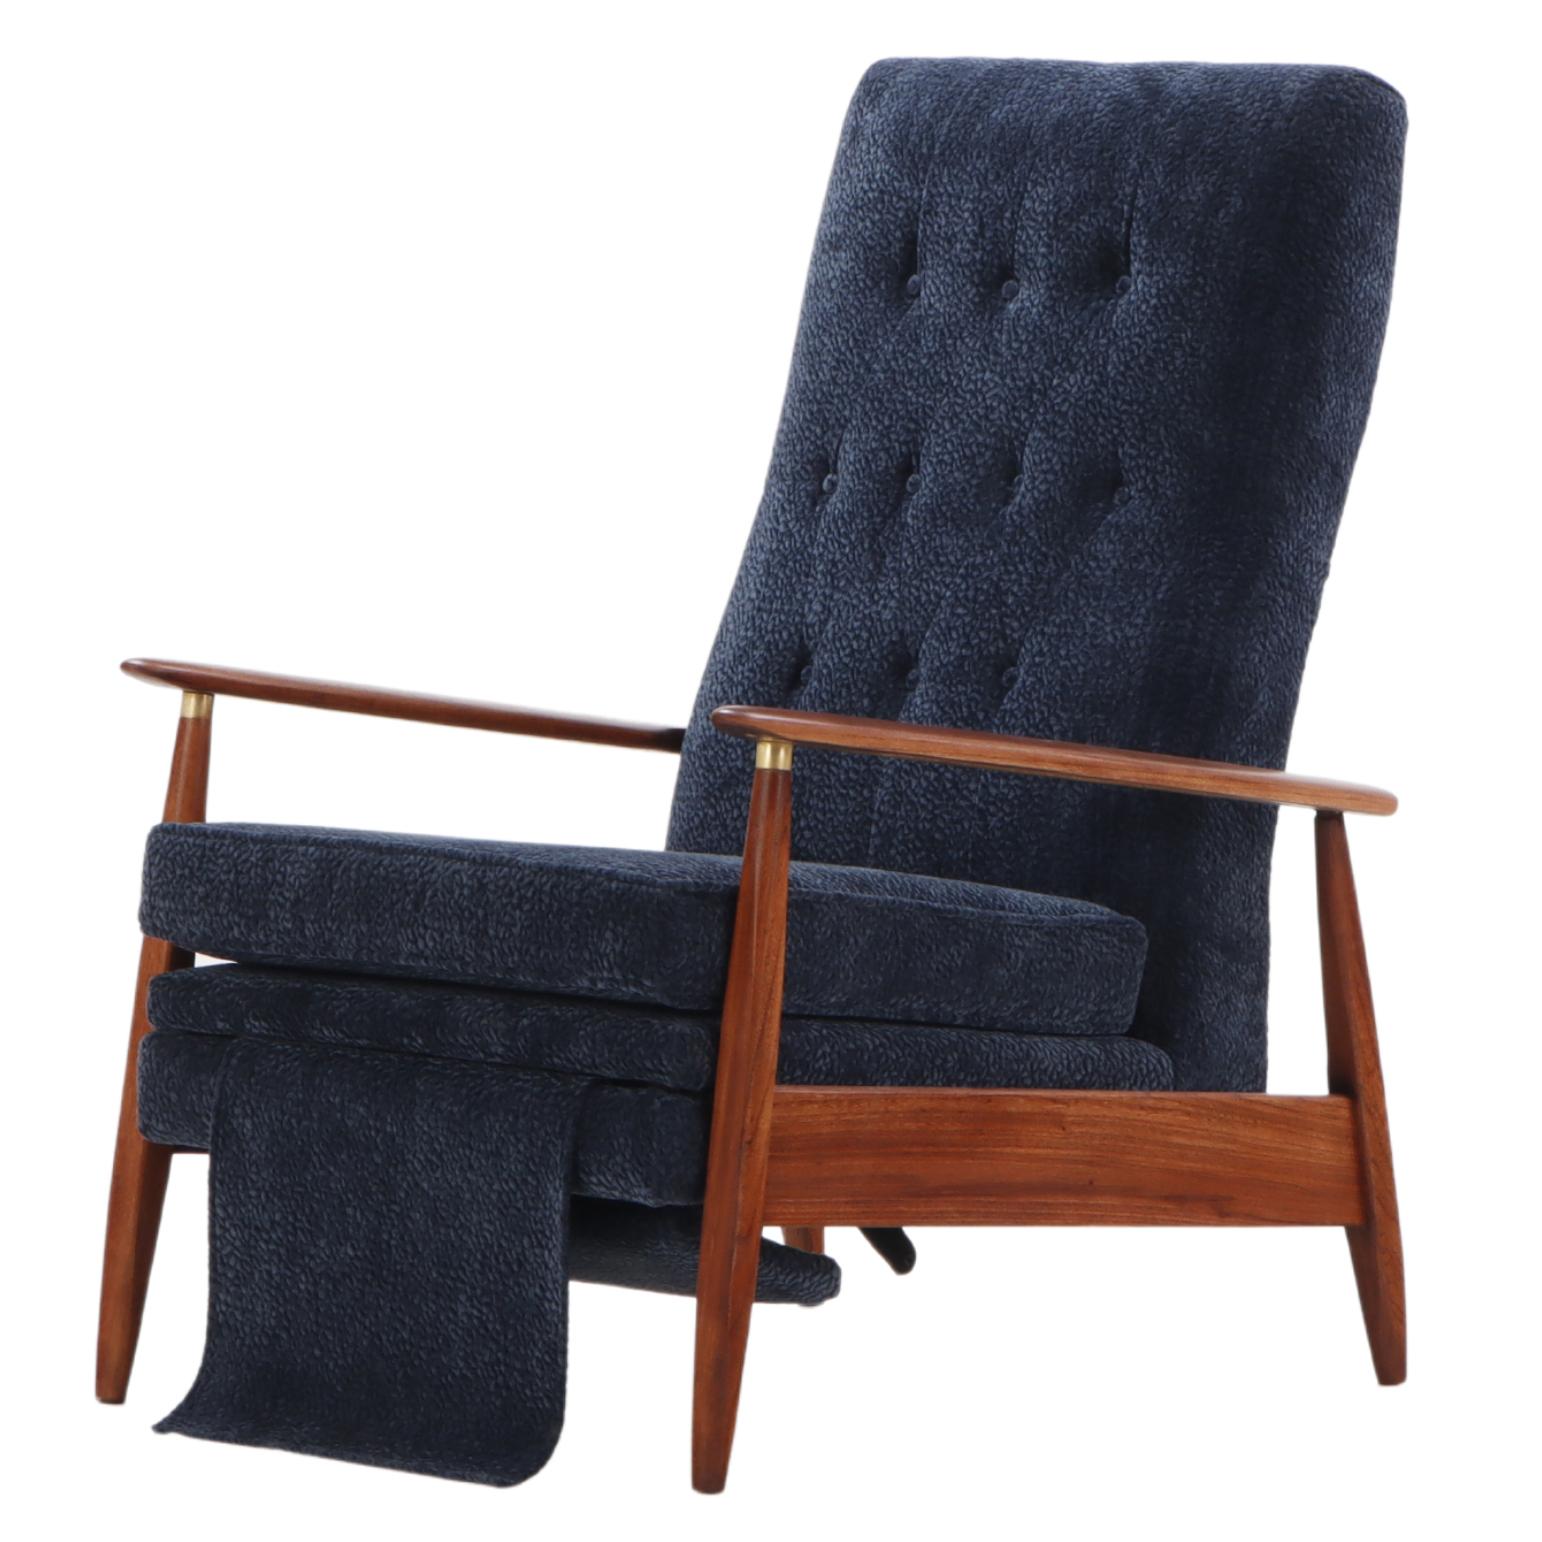 A mid century modern upholstered Milo Baughman model #74 walnut reclining chair.